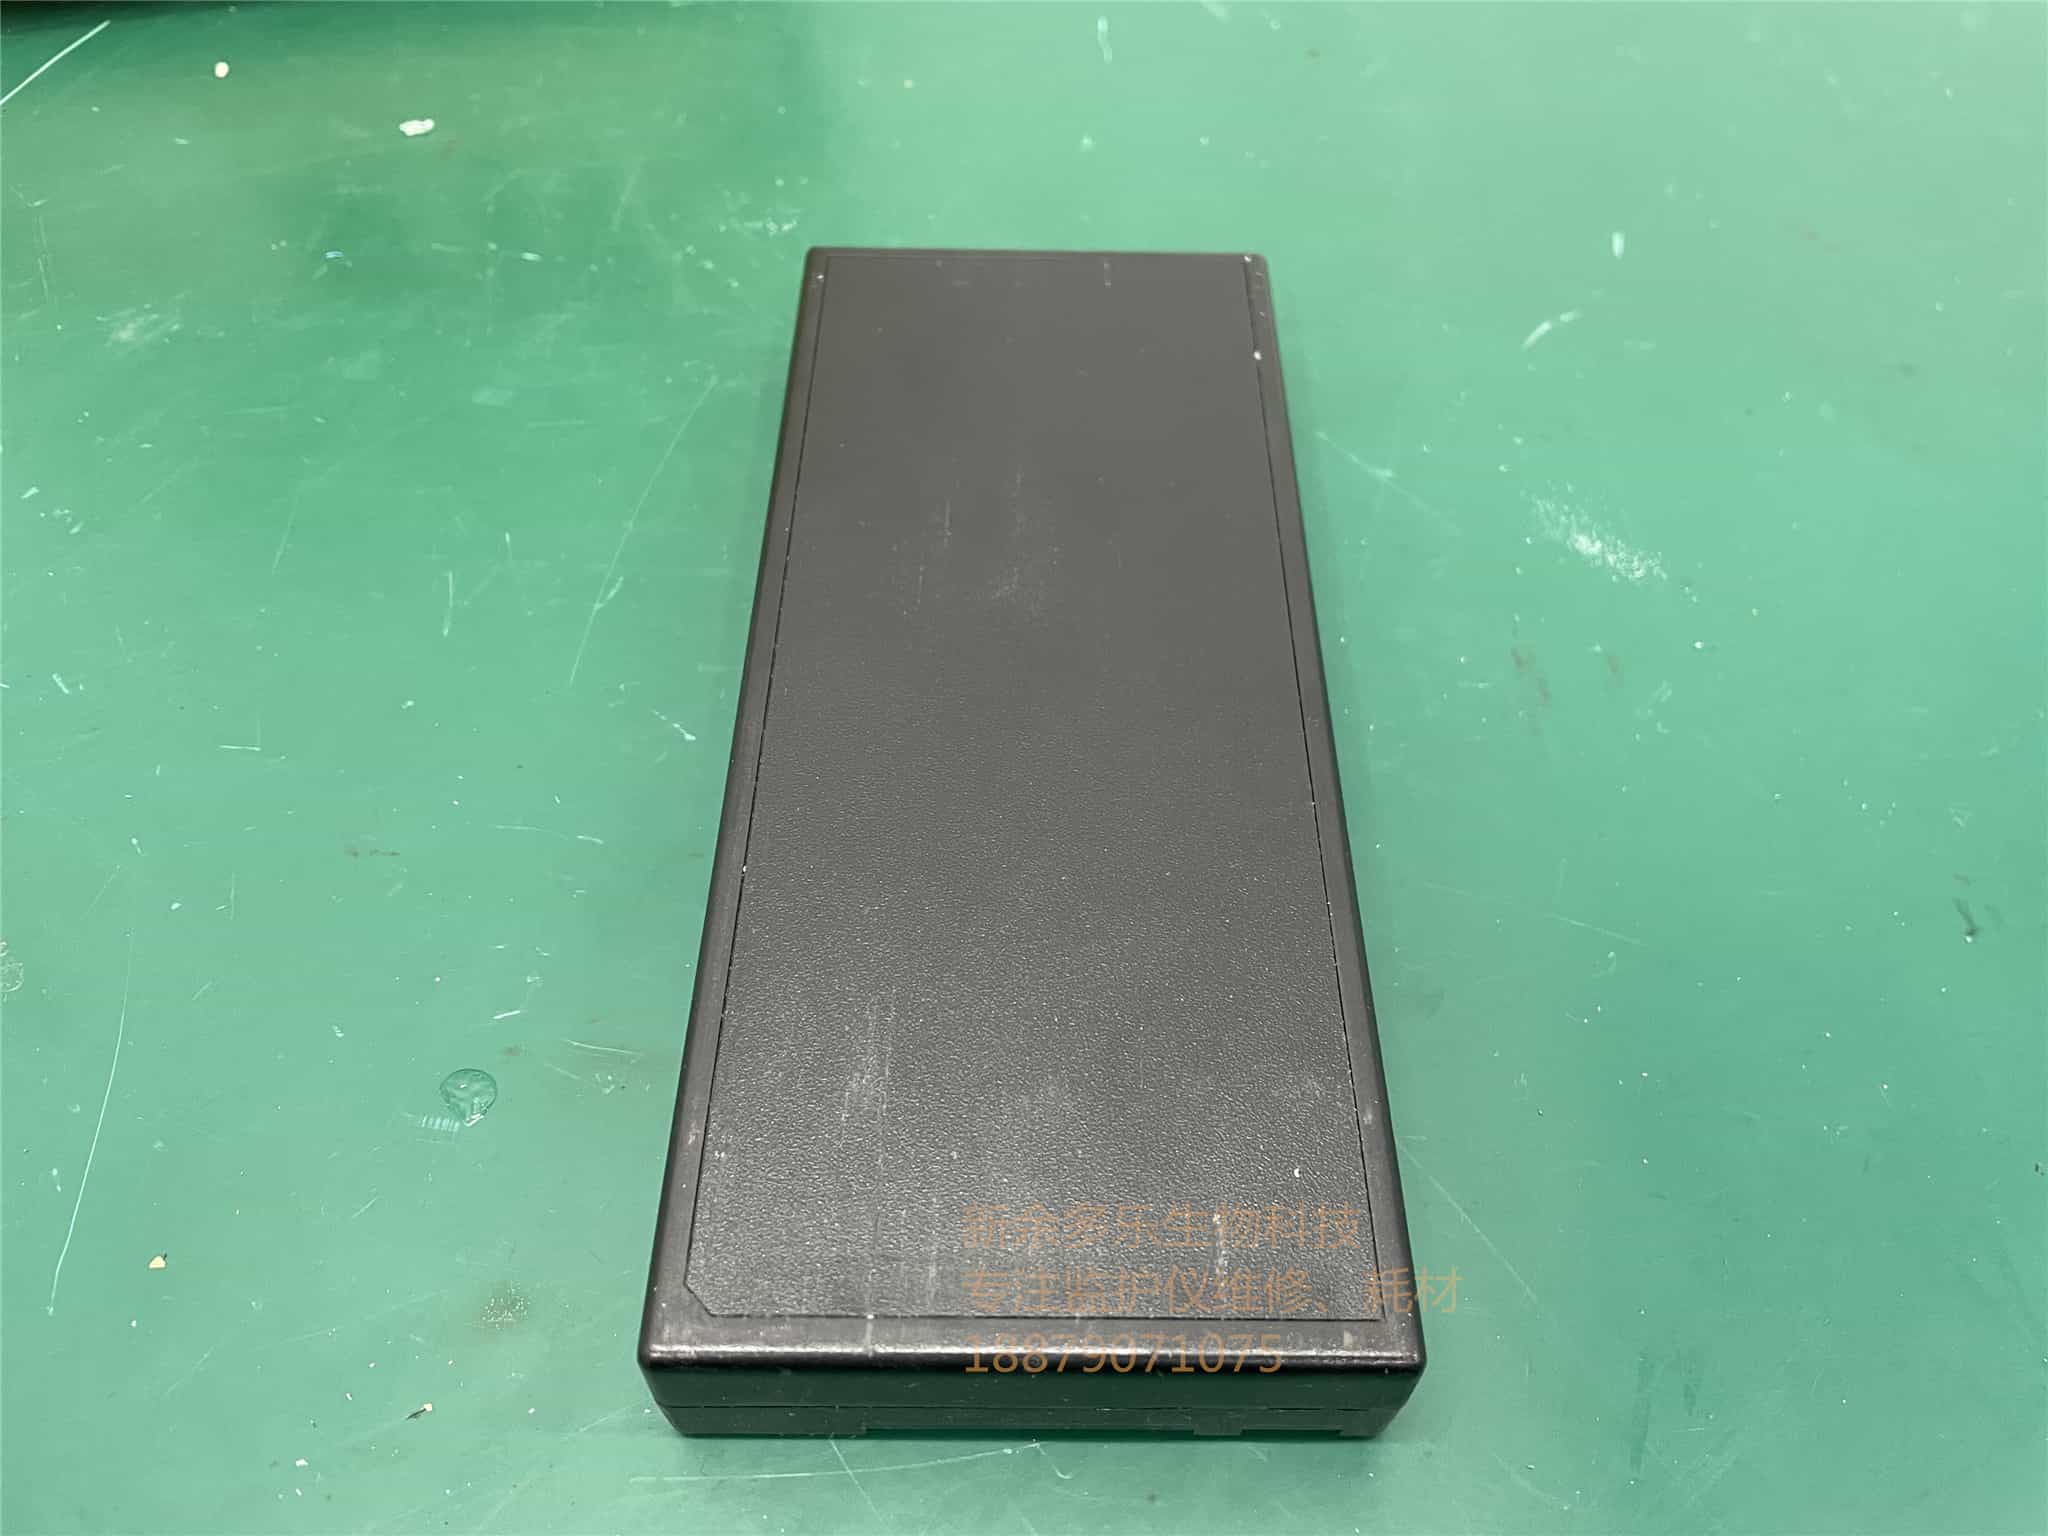 科曼C60监护仪电池型号：JHOTA18650 14.8V 4400mAh  jpg